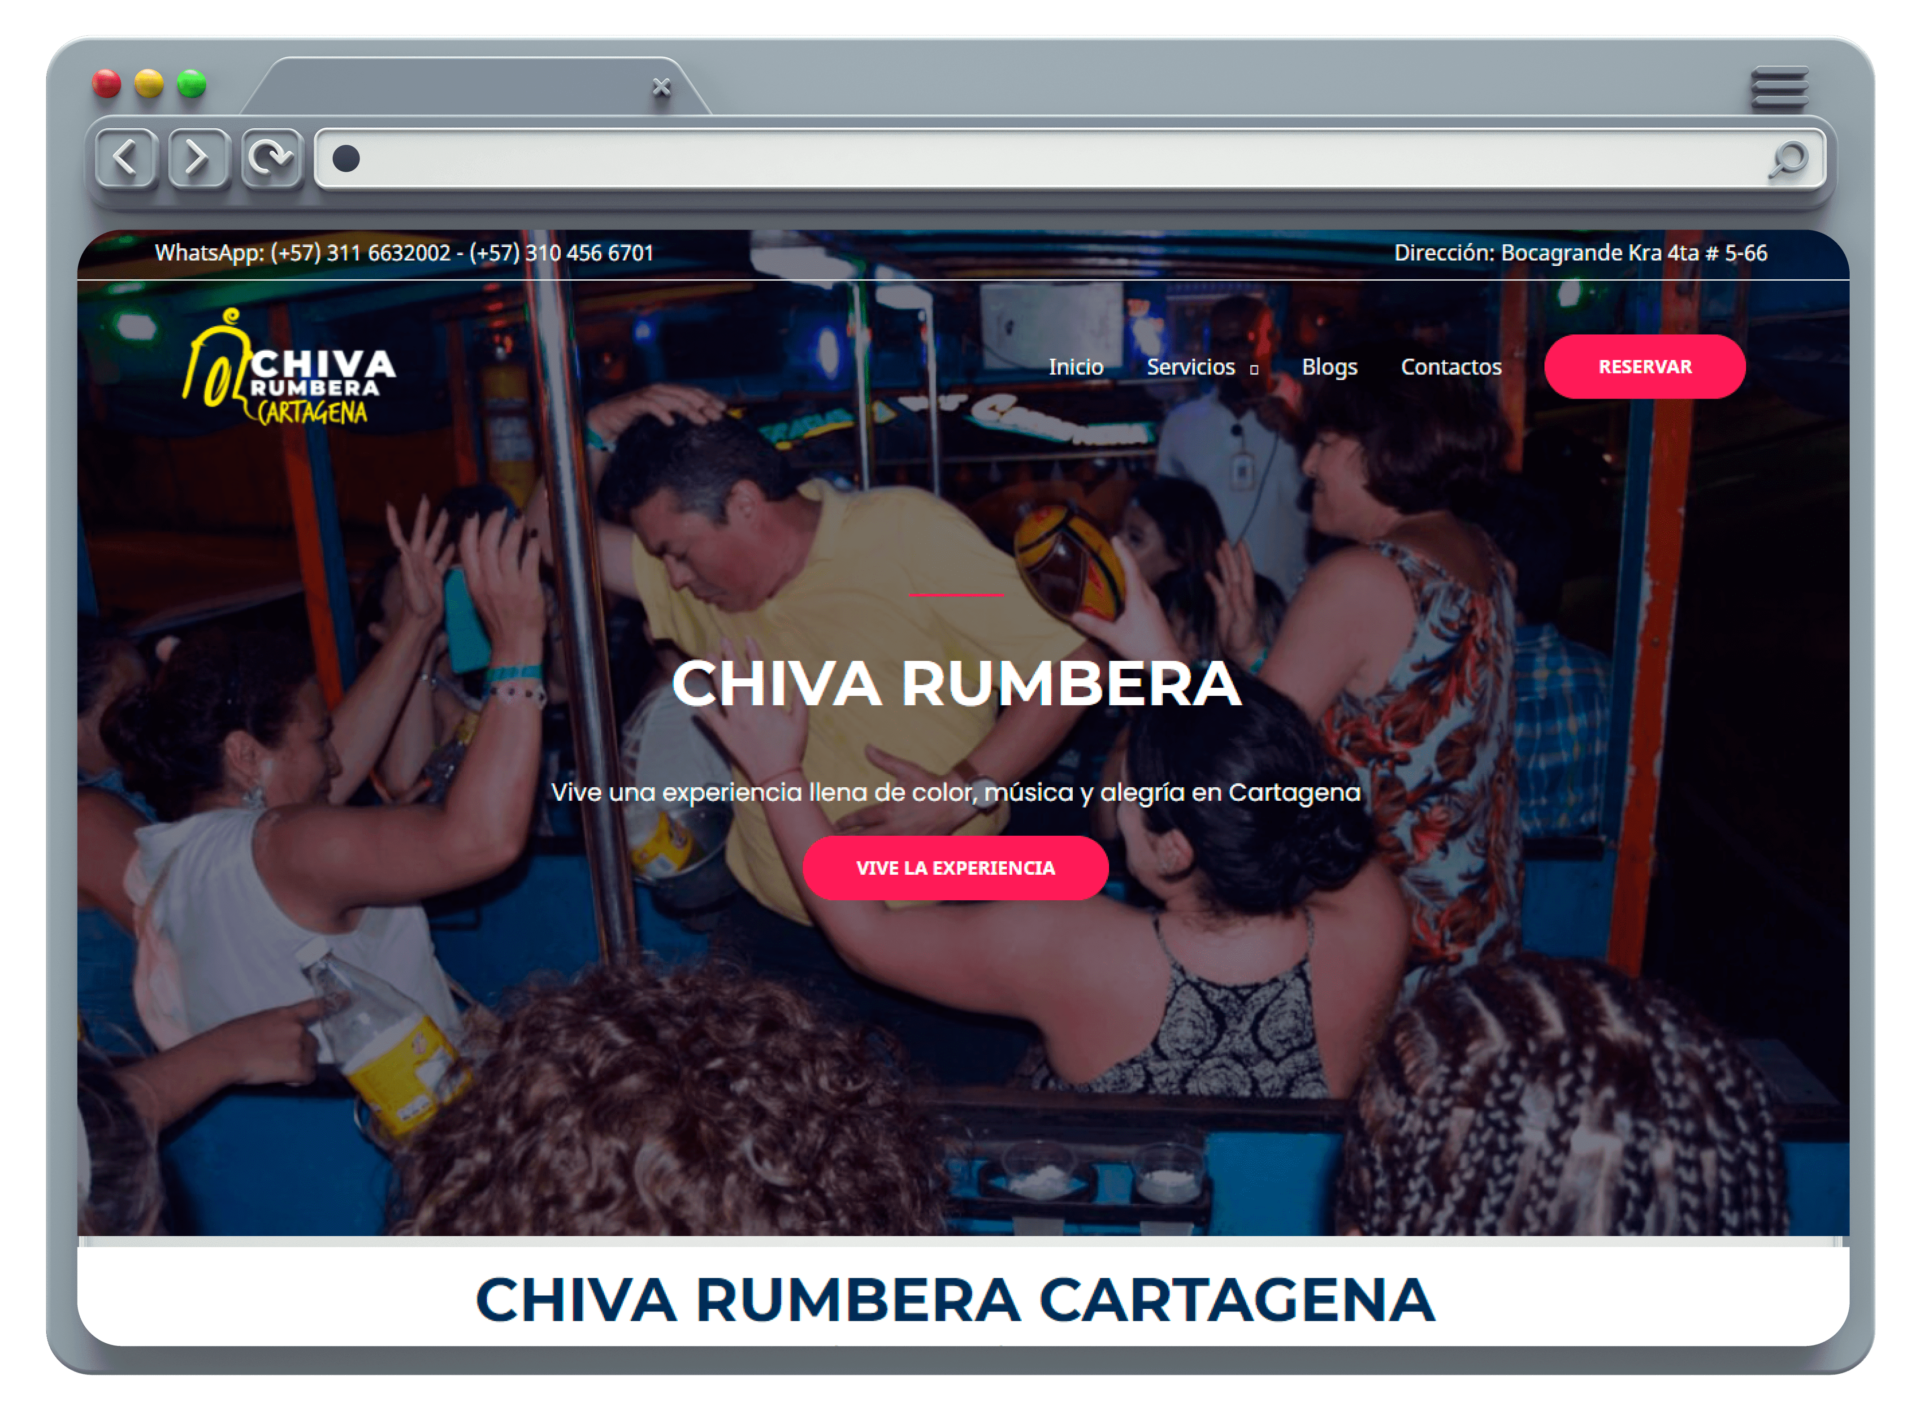 Chiva Rumbera Cartagena